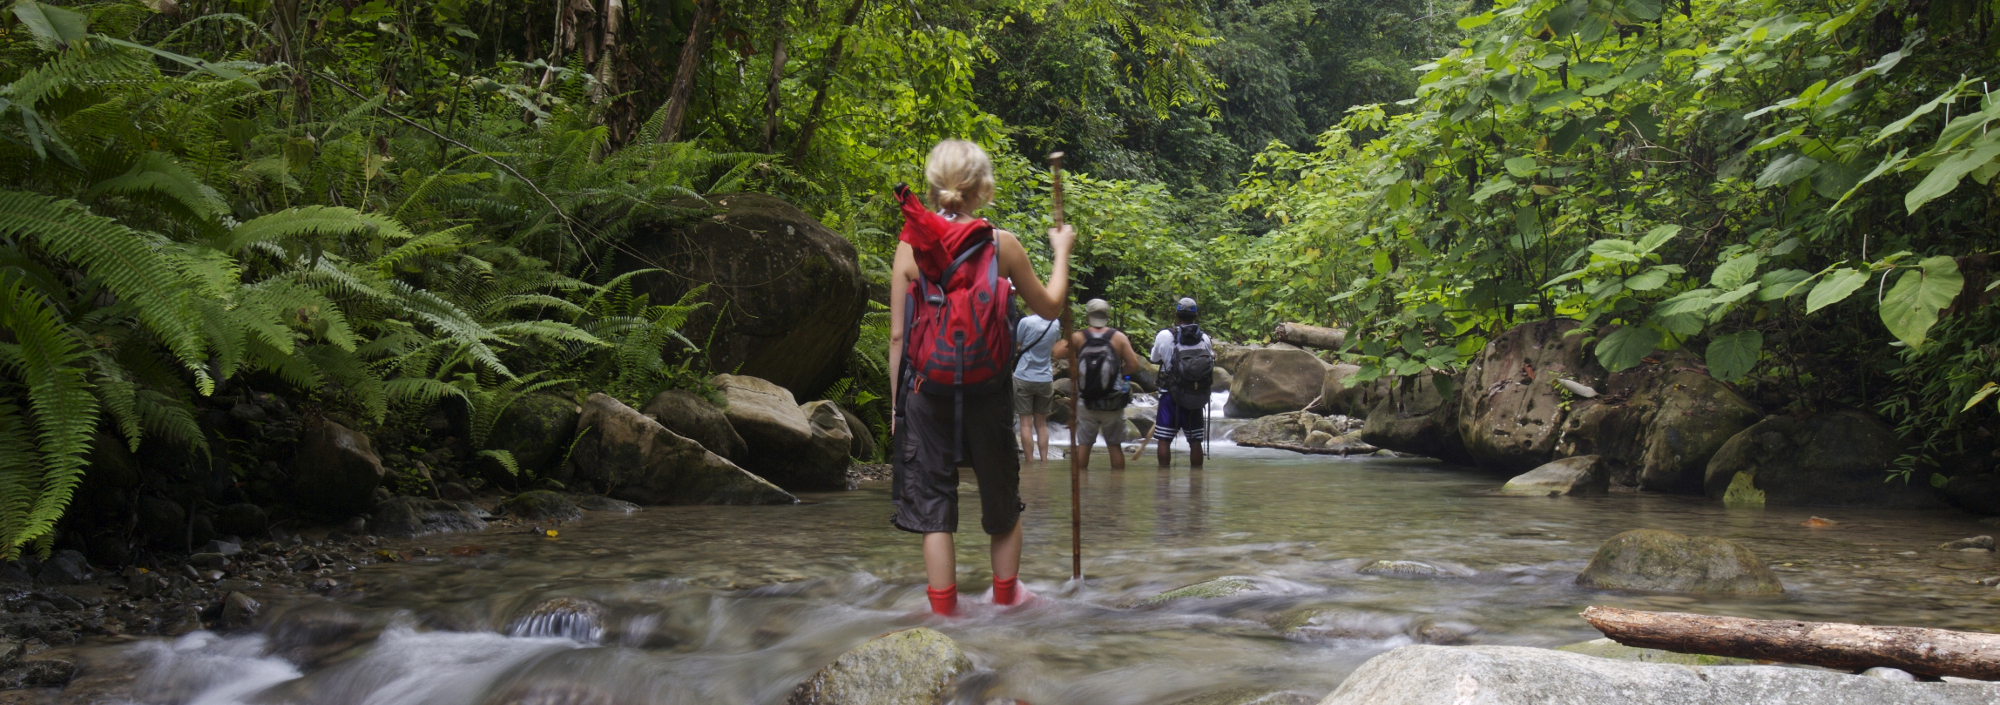 Wanderer in einem Fluss im Talamanca-Gebirge in Costa Rica